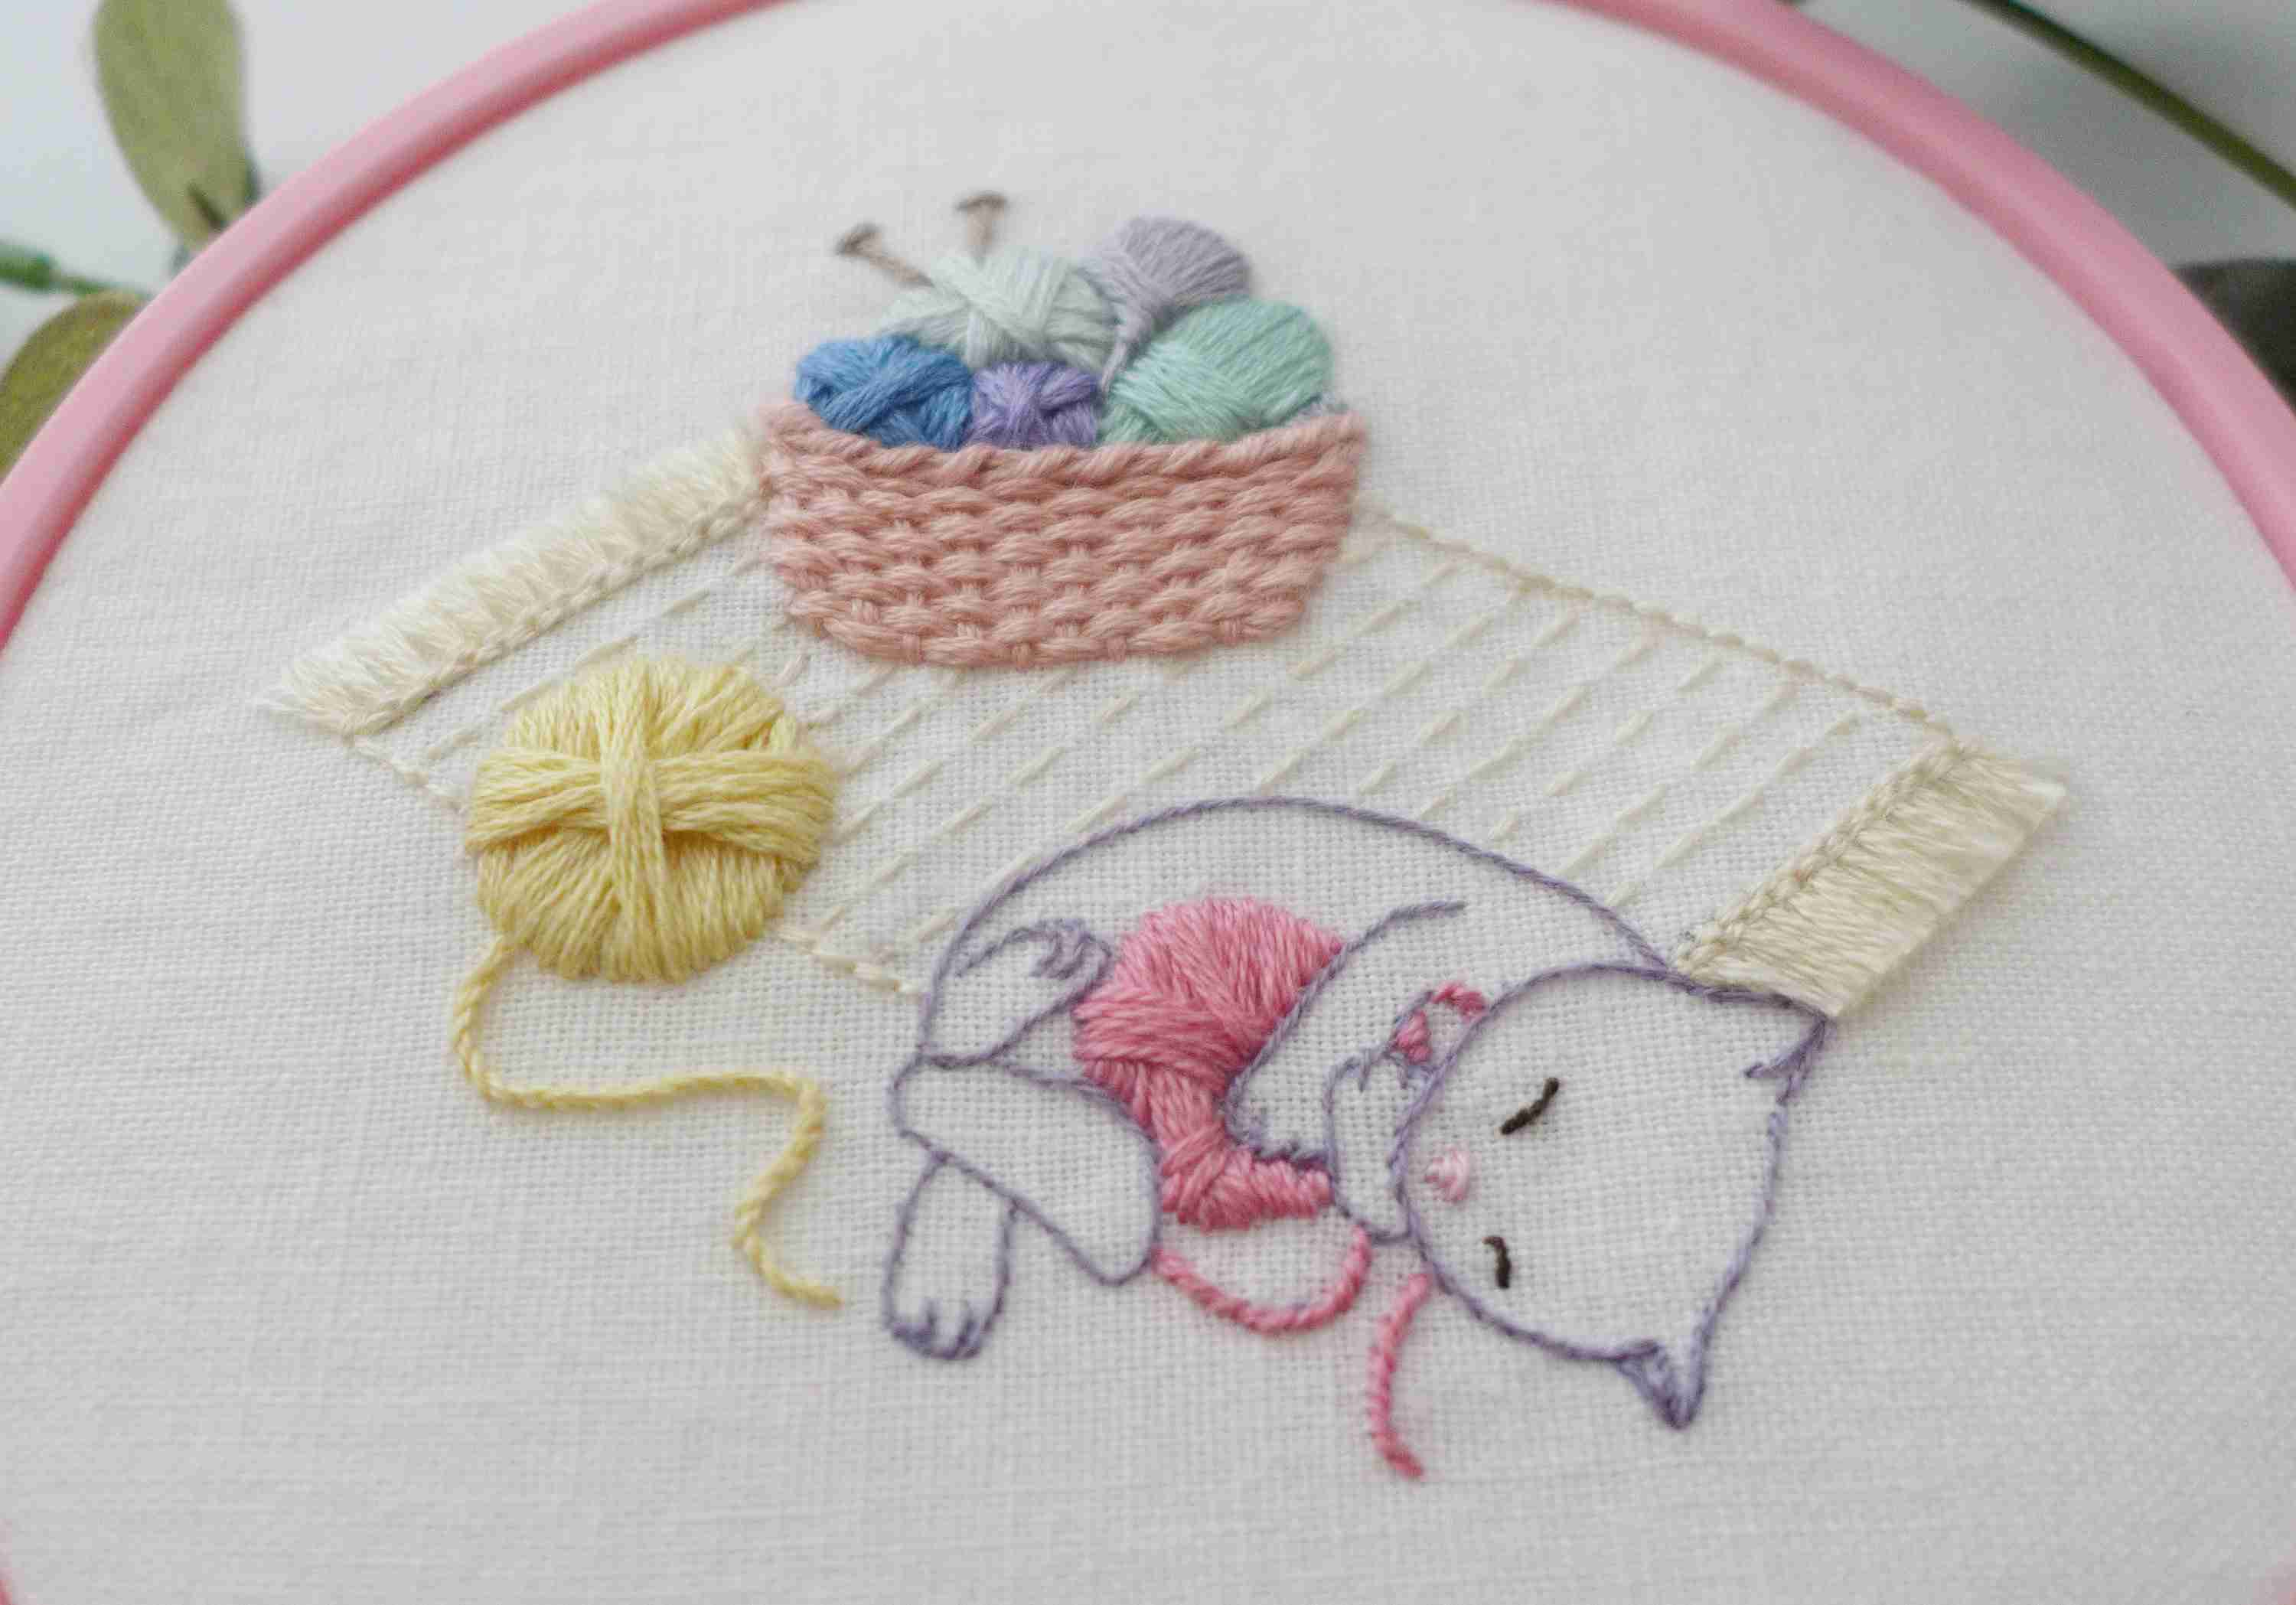 Cat Embroidery Patterns 15 Cat Embroidery Patterns